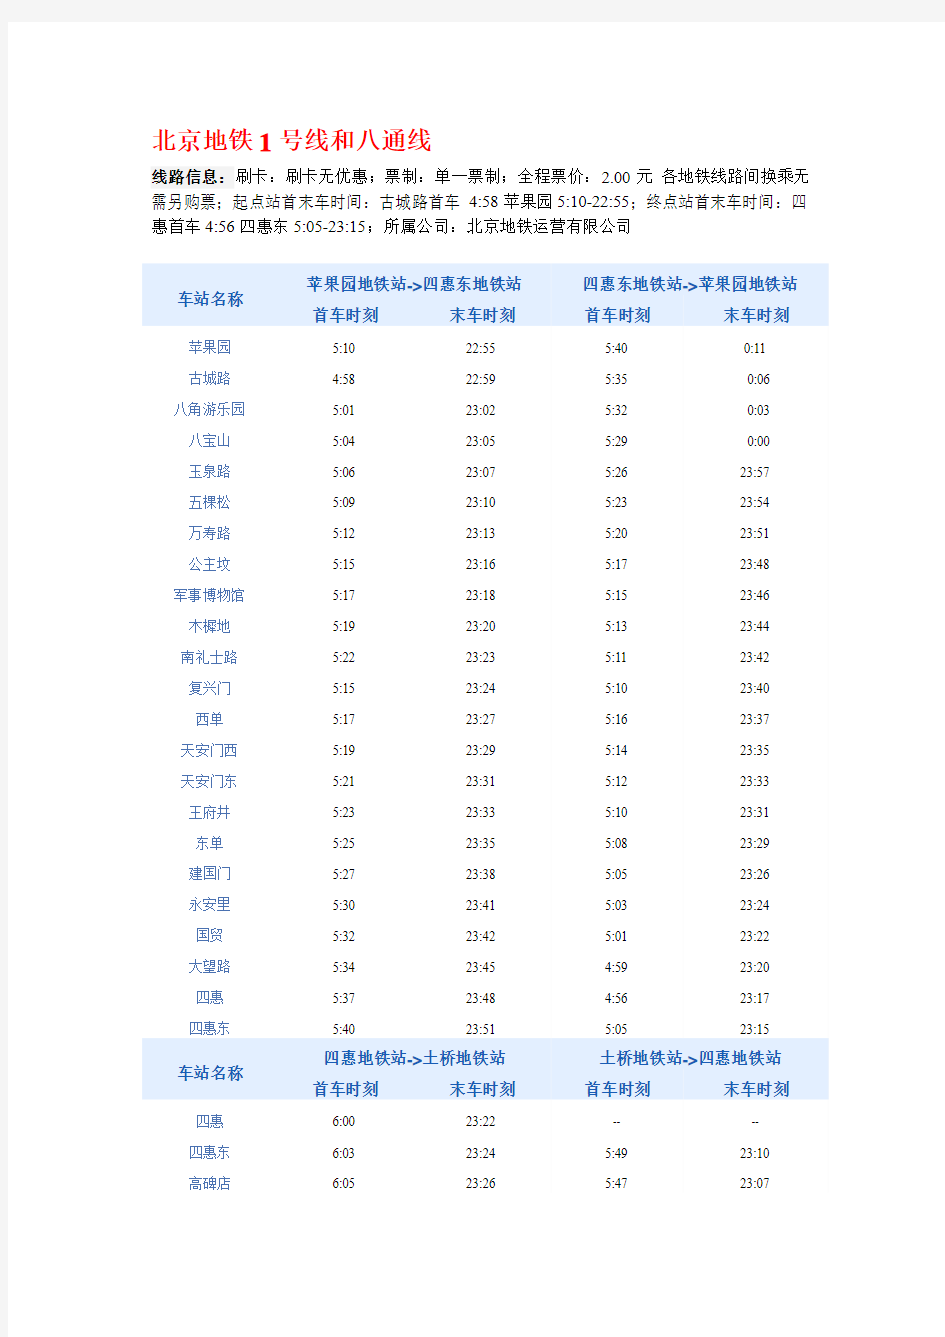 北京地铁列车时刻表(最新)